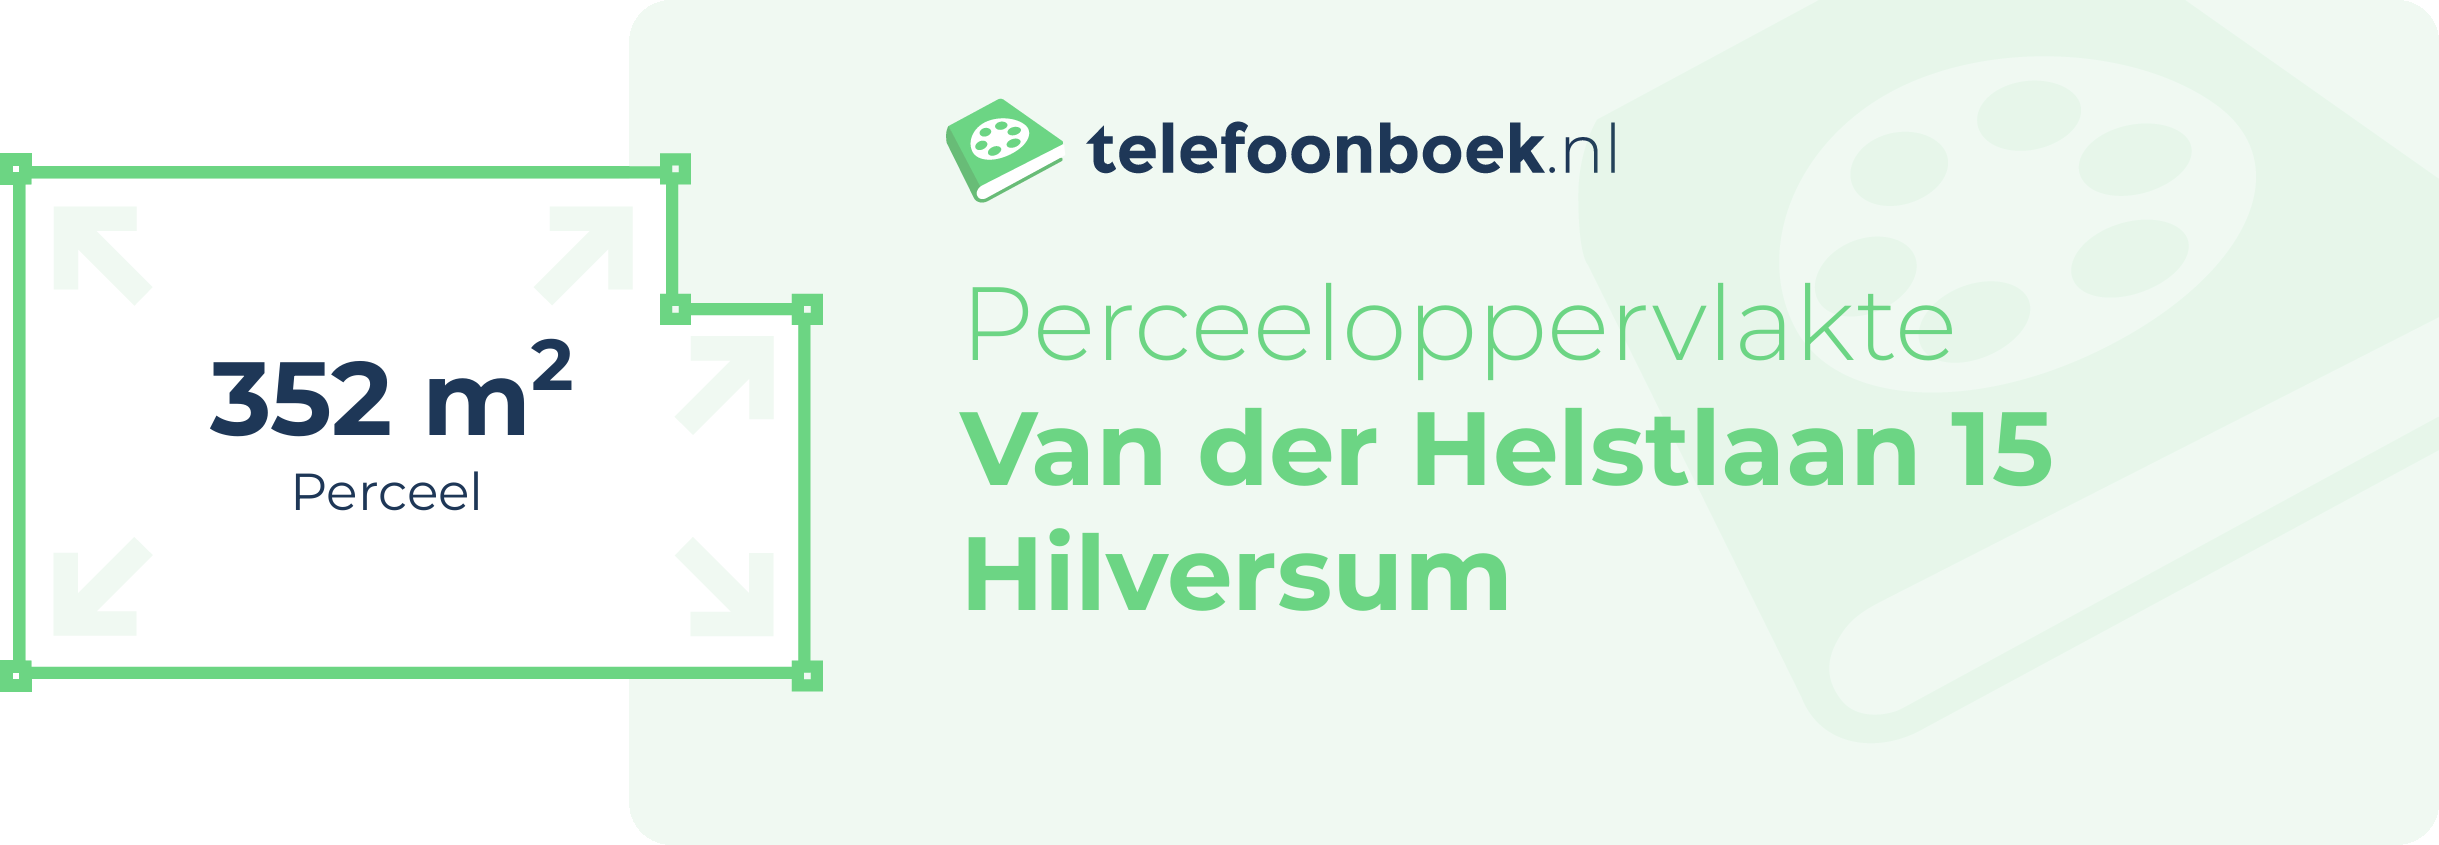 Perceeloppervlakte Van Der Helstlaan 15 Hilversum